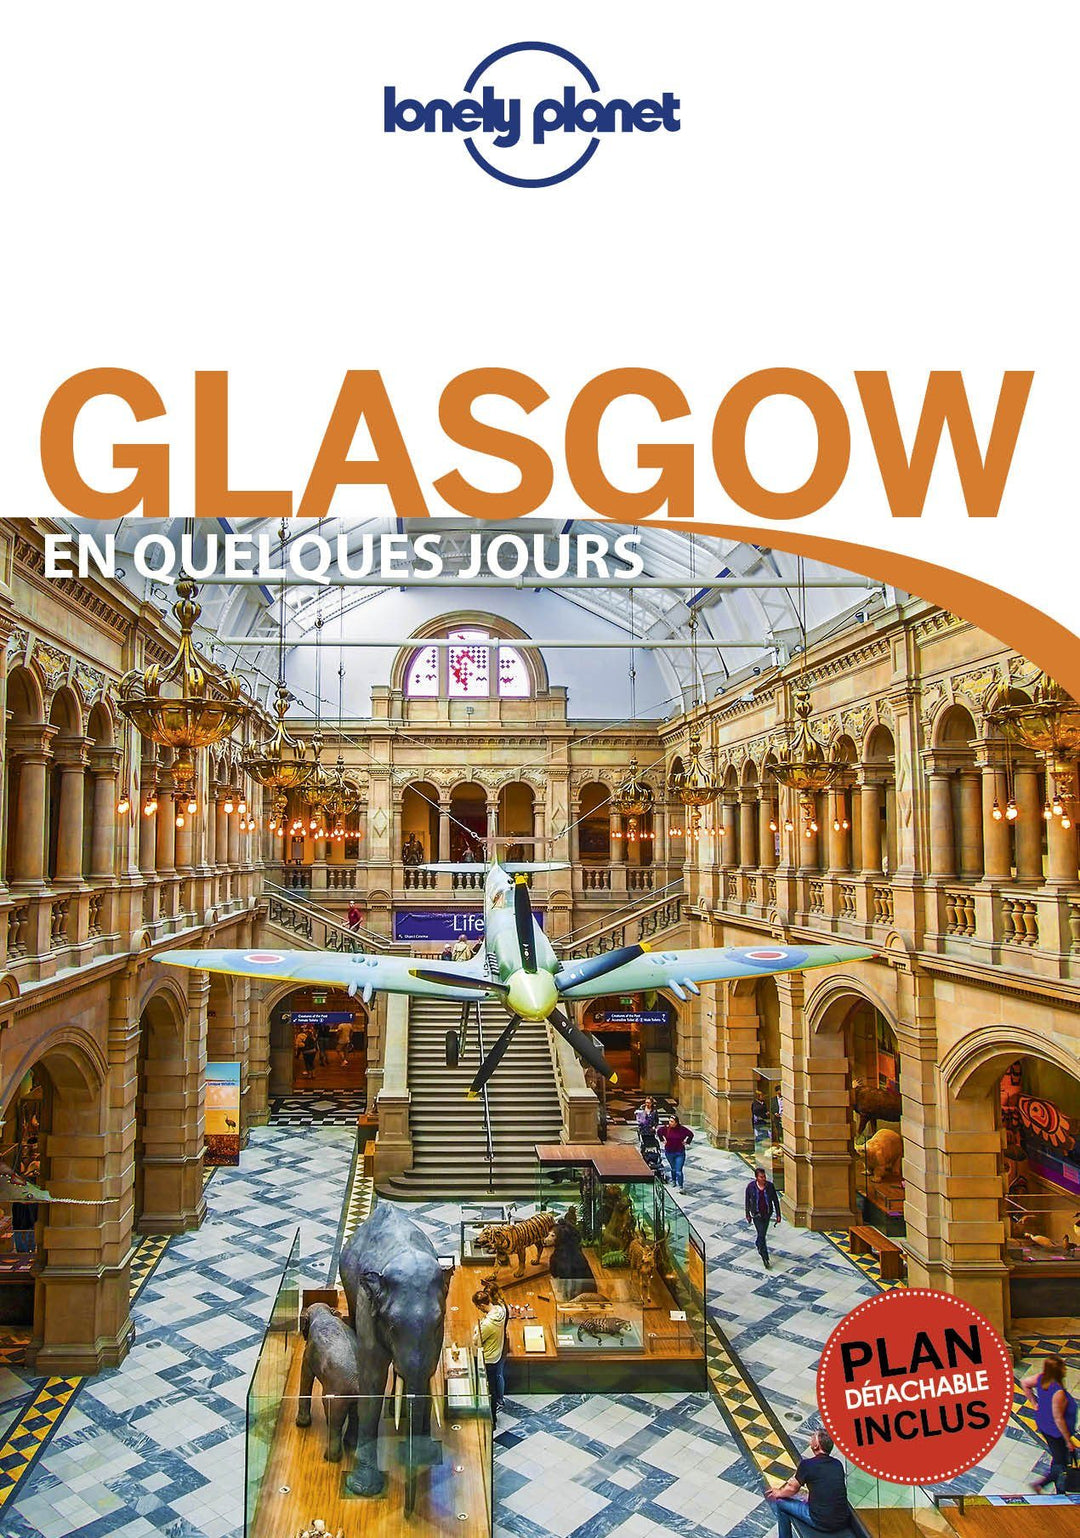 Guide de voyage de poche - Glasgow en quelques jours | Lonely Planet guide de voyage Lonely Planet 